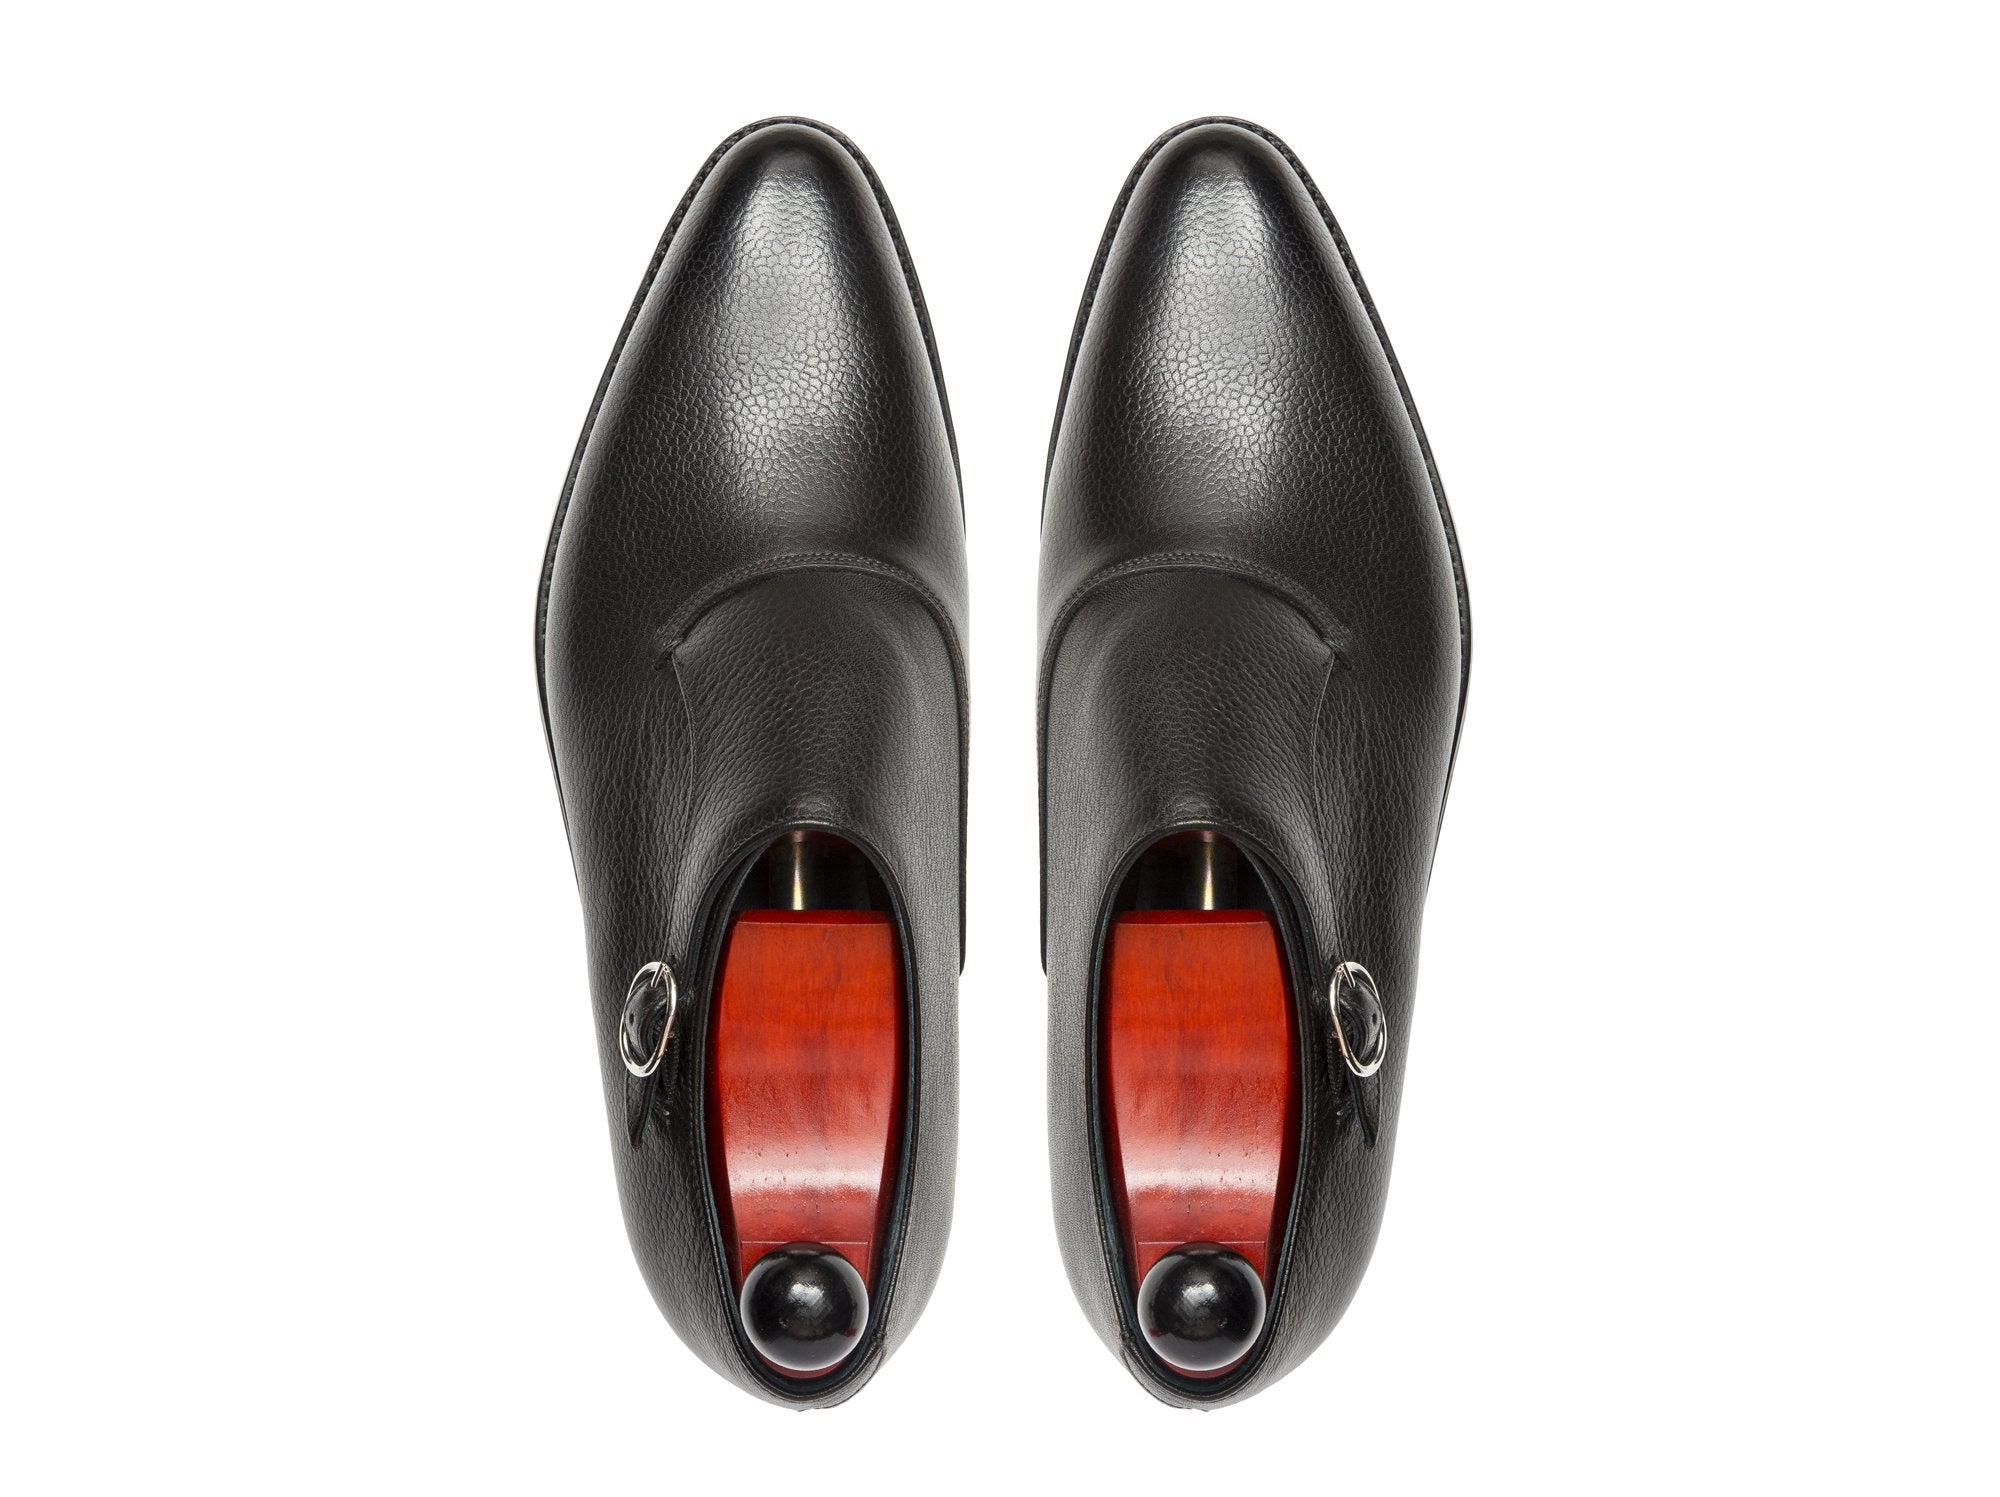 J.FitzPatrick Footwear - Madrona - Black Soft Grain - JKF Last - Double Leather Sole